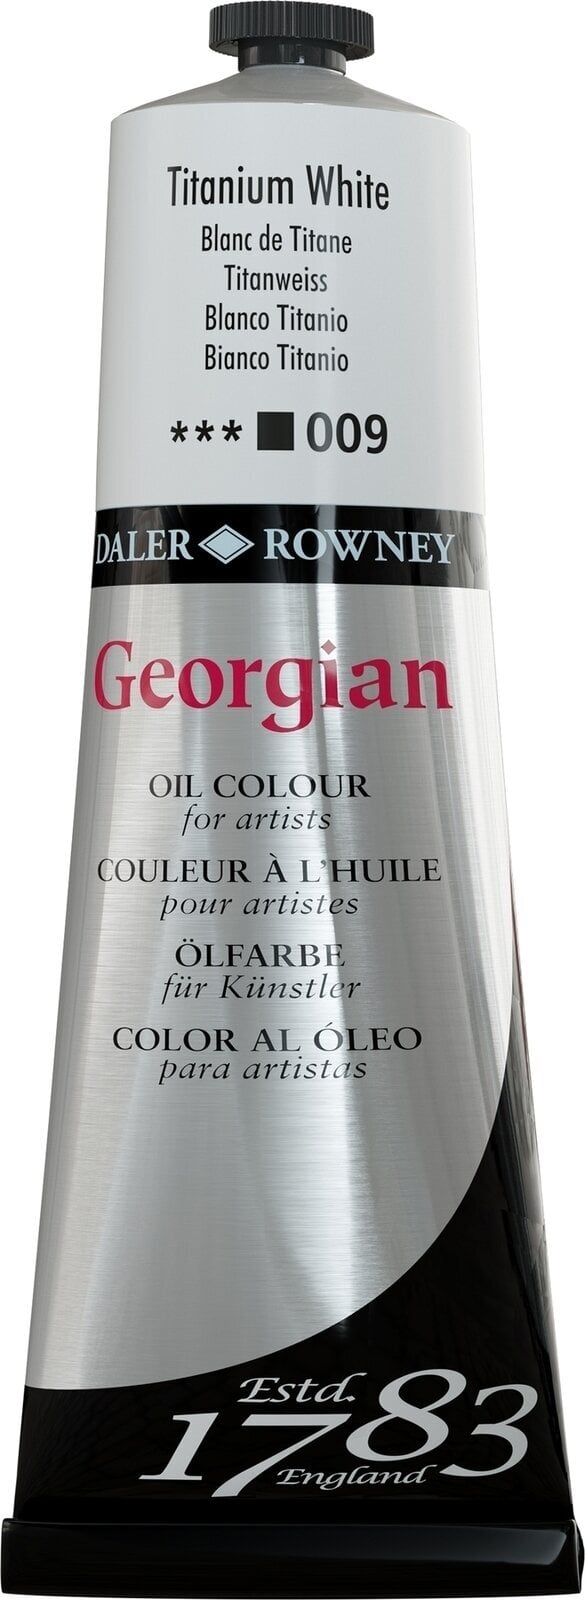 Tempera ad olio Daler Rowney Georgian Pittura a olio Titanium White 225 ml 1 pz